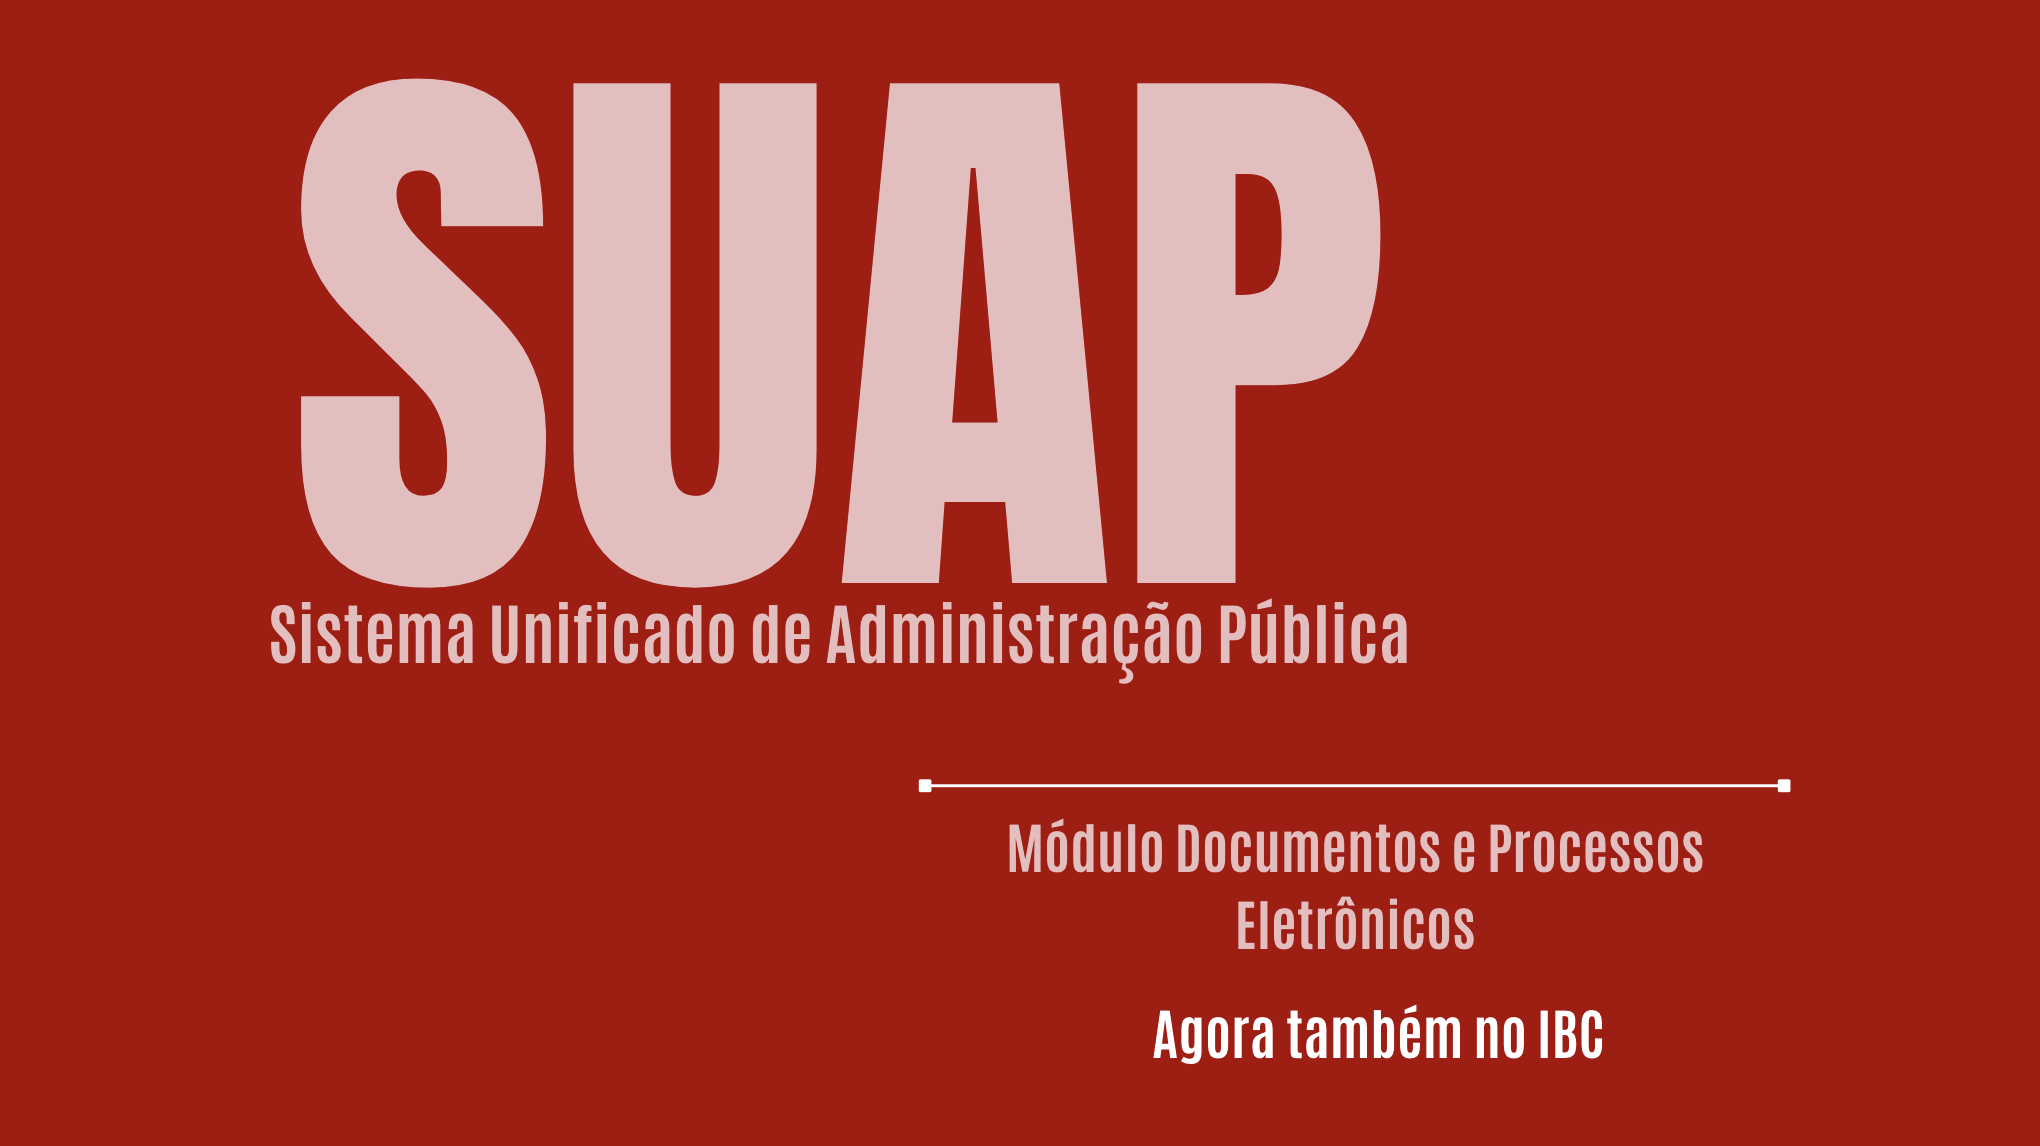 Sobre fundo vermelho, em letras brancas, lê-se: "SUAP: Sistema Unificado de Administração Pública; Módulo Documentos e Processos Eletrônicos: agora também no IBC."